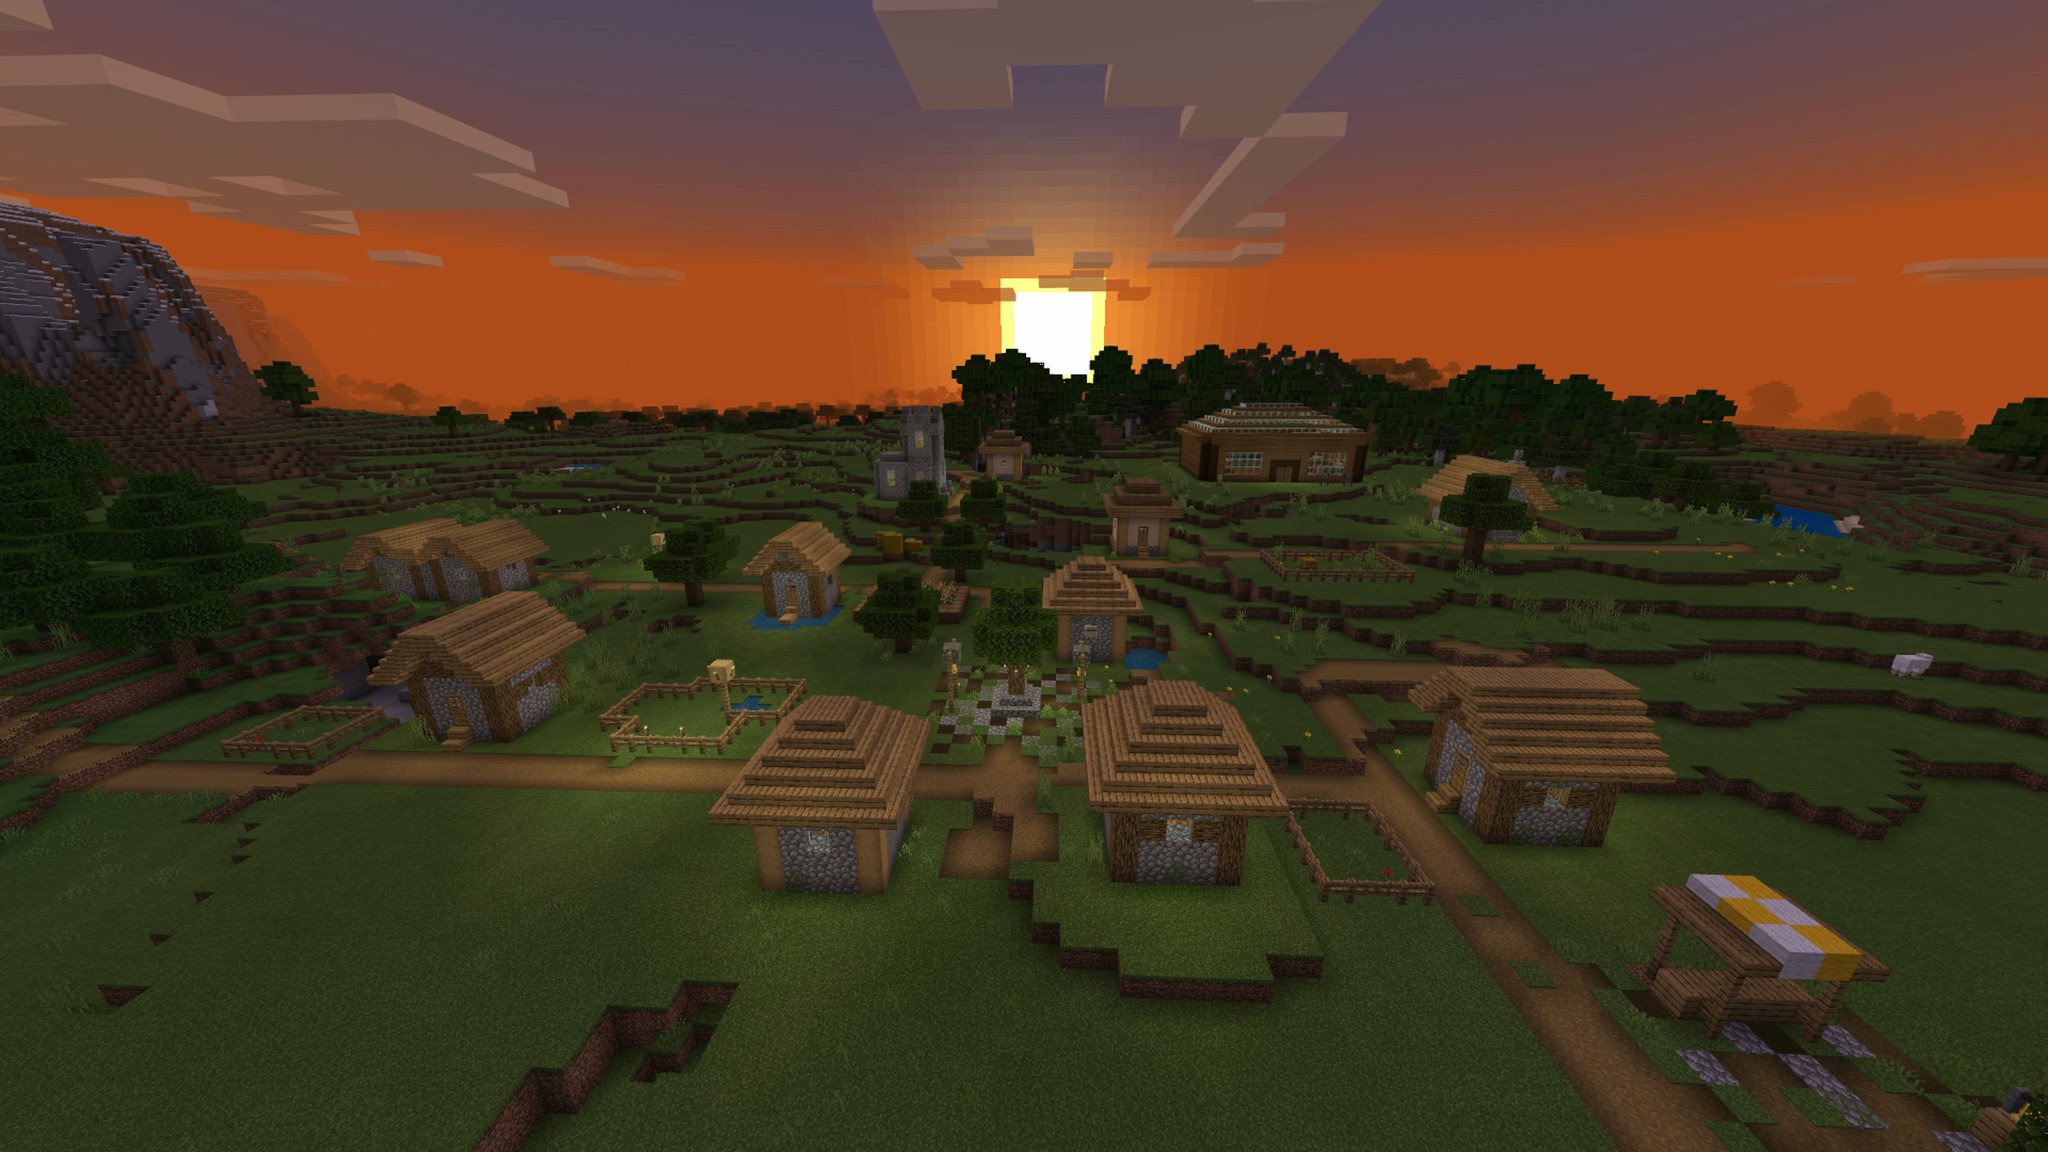 Village at sunset